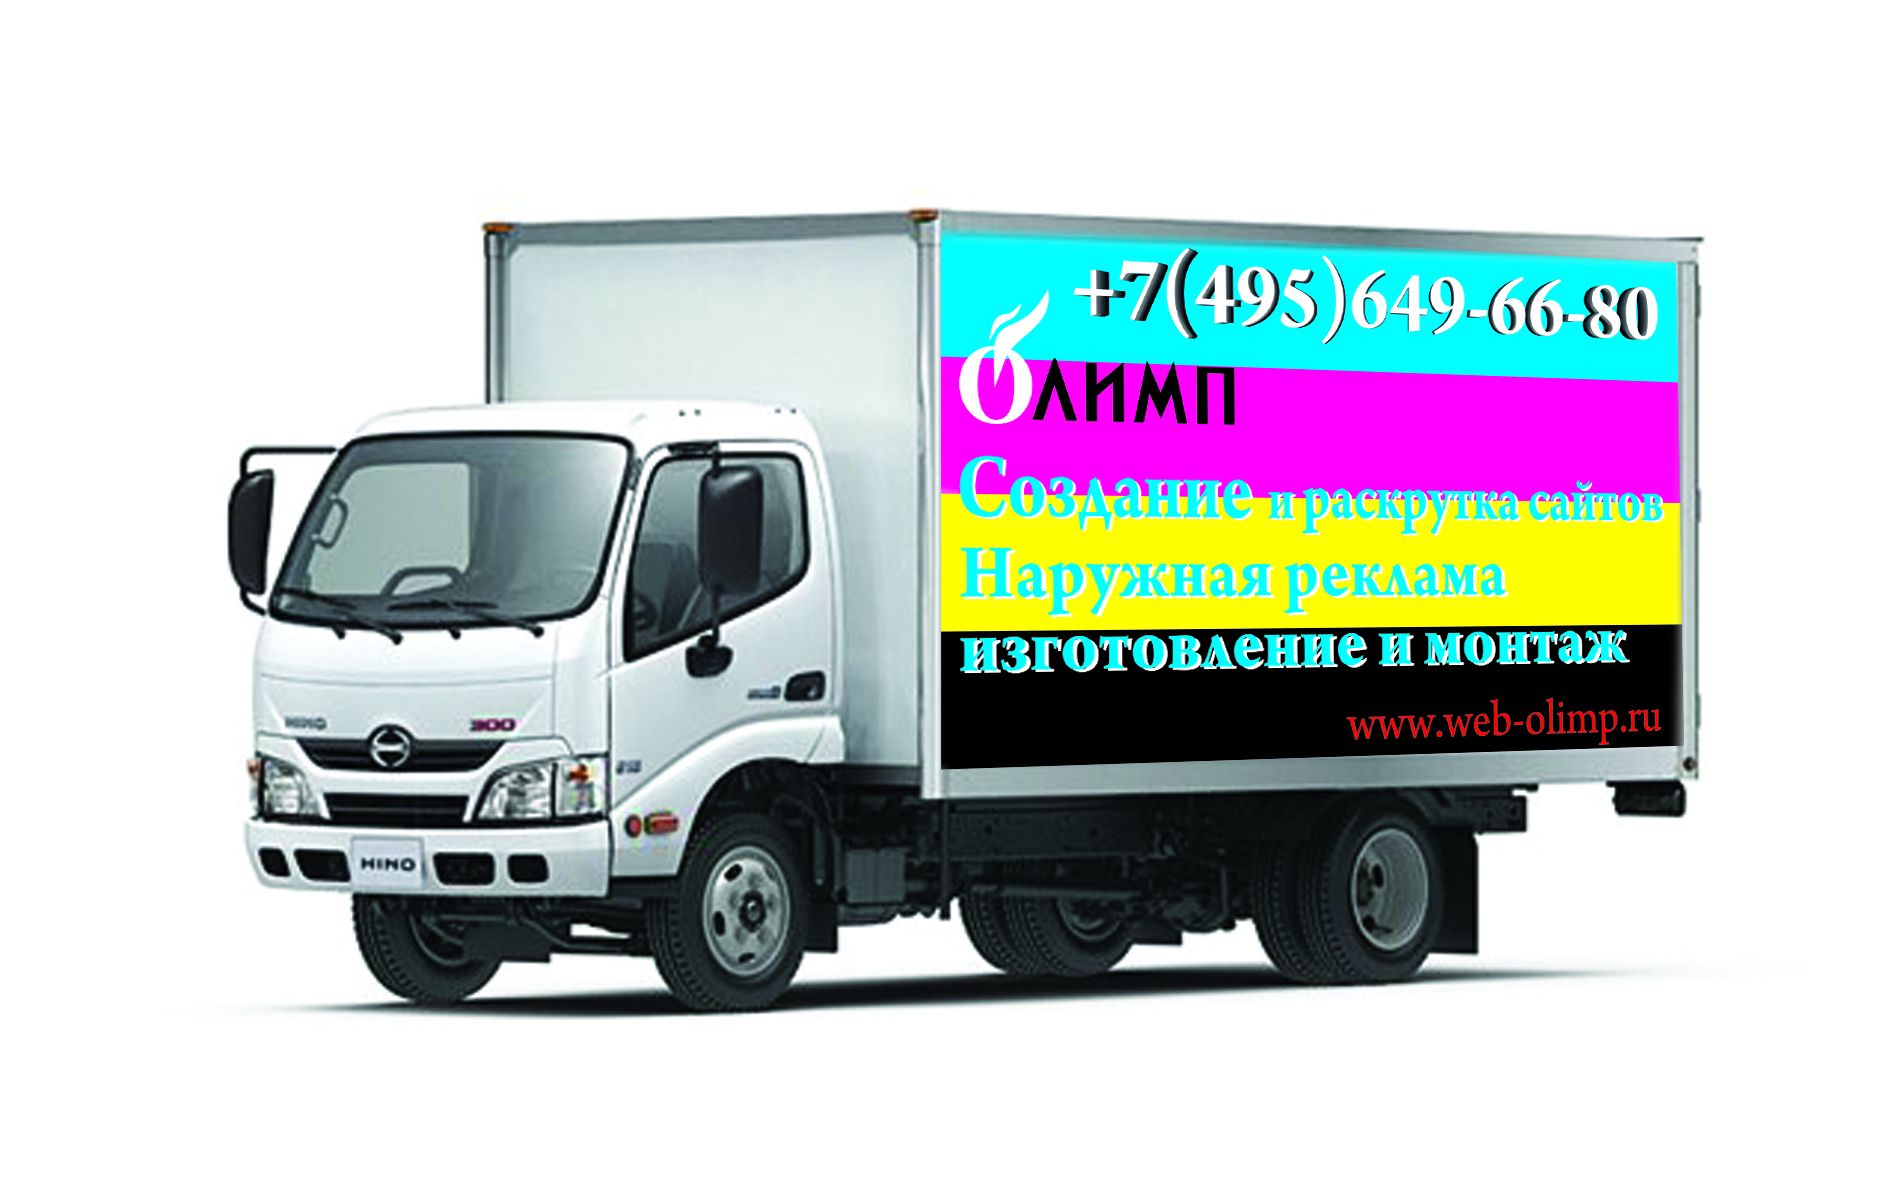 Реклама на кузов грузовика - дизайнер PaveJI